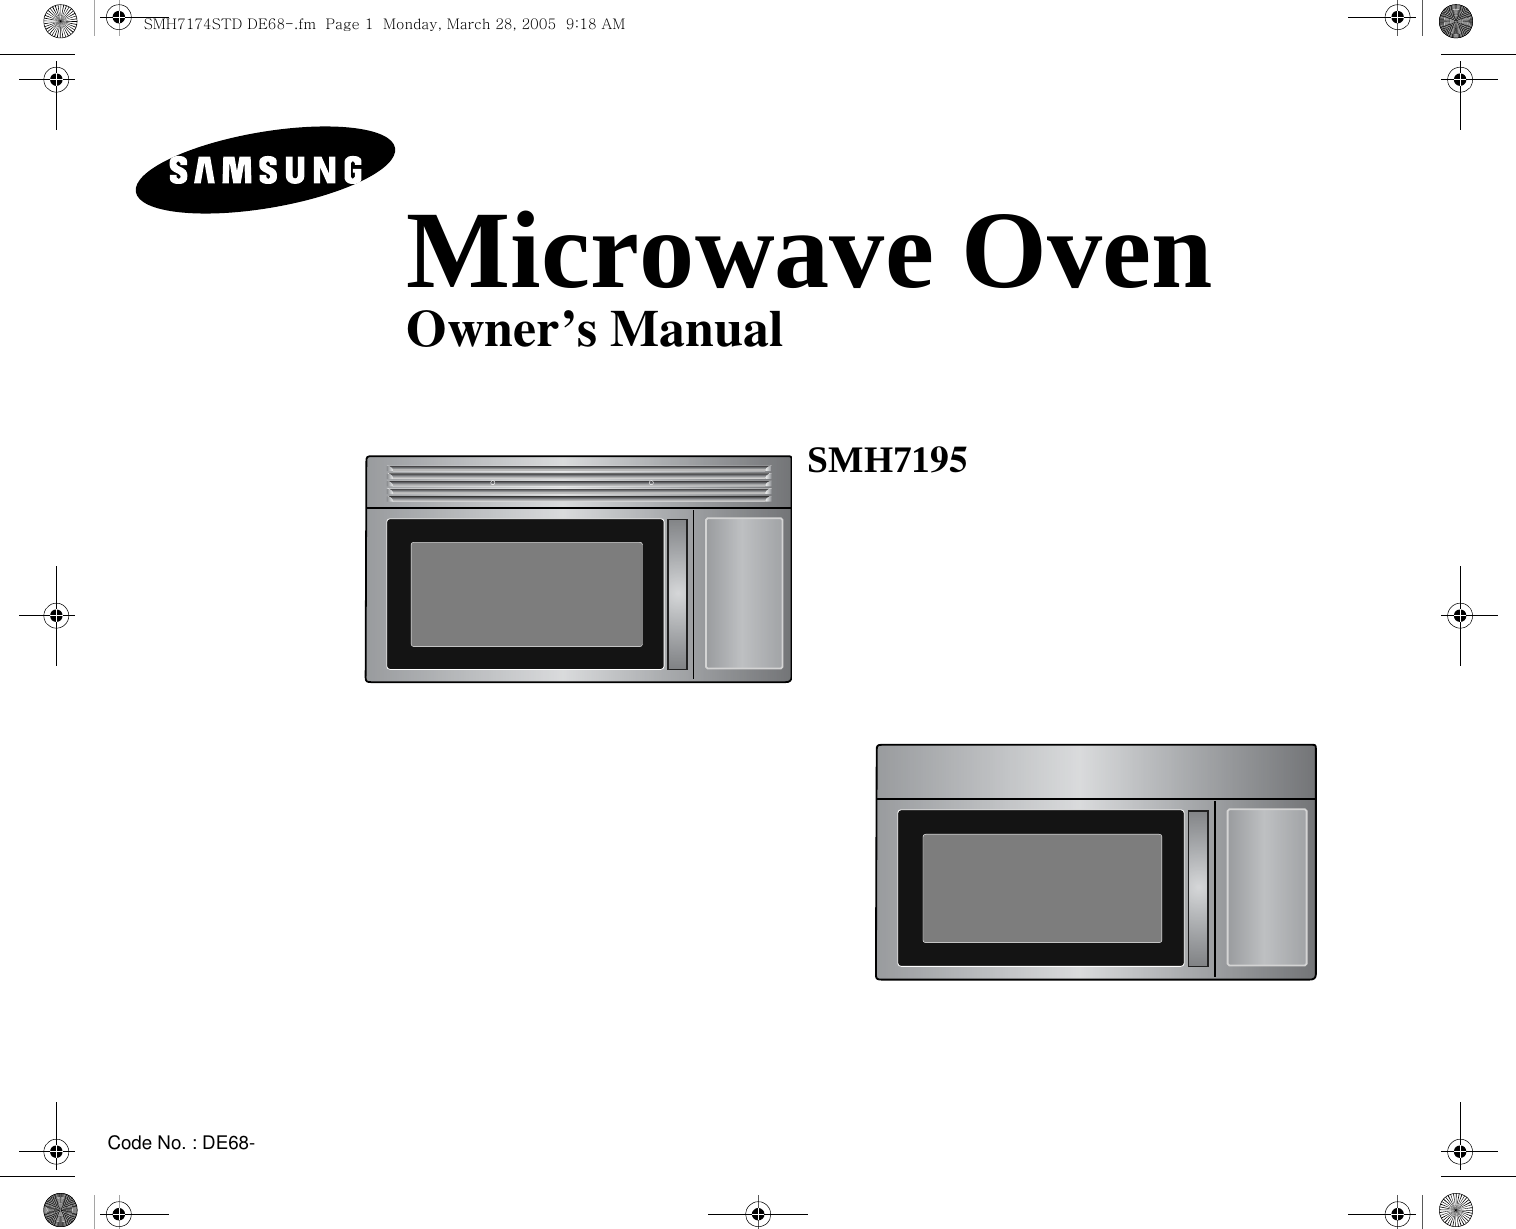 Code No. : DE68-Microwave OvenOwner’s ManualSMH7195 SMH7174STD DE68-.fm  Page 1  Monday, March 28, 2005  9:18 AM